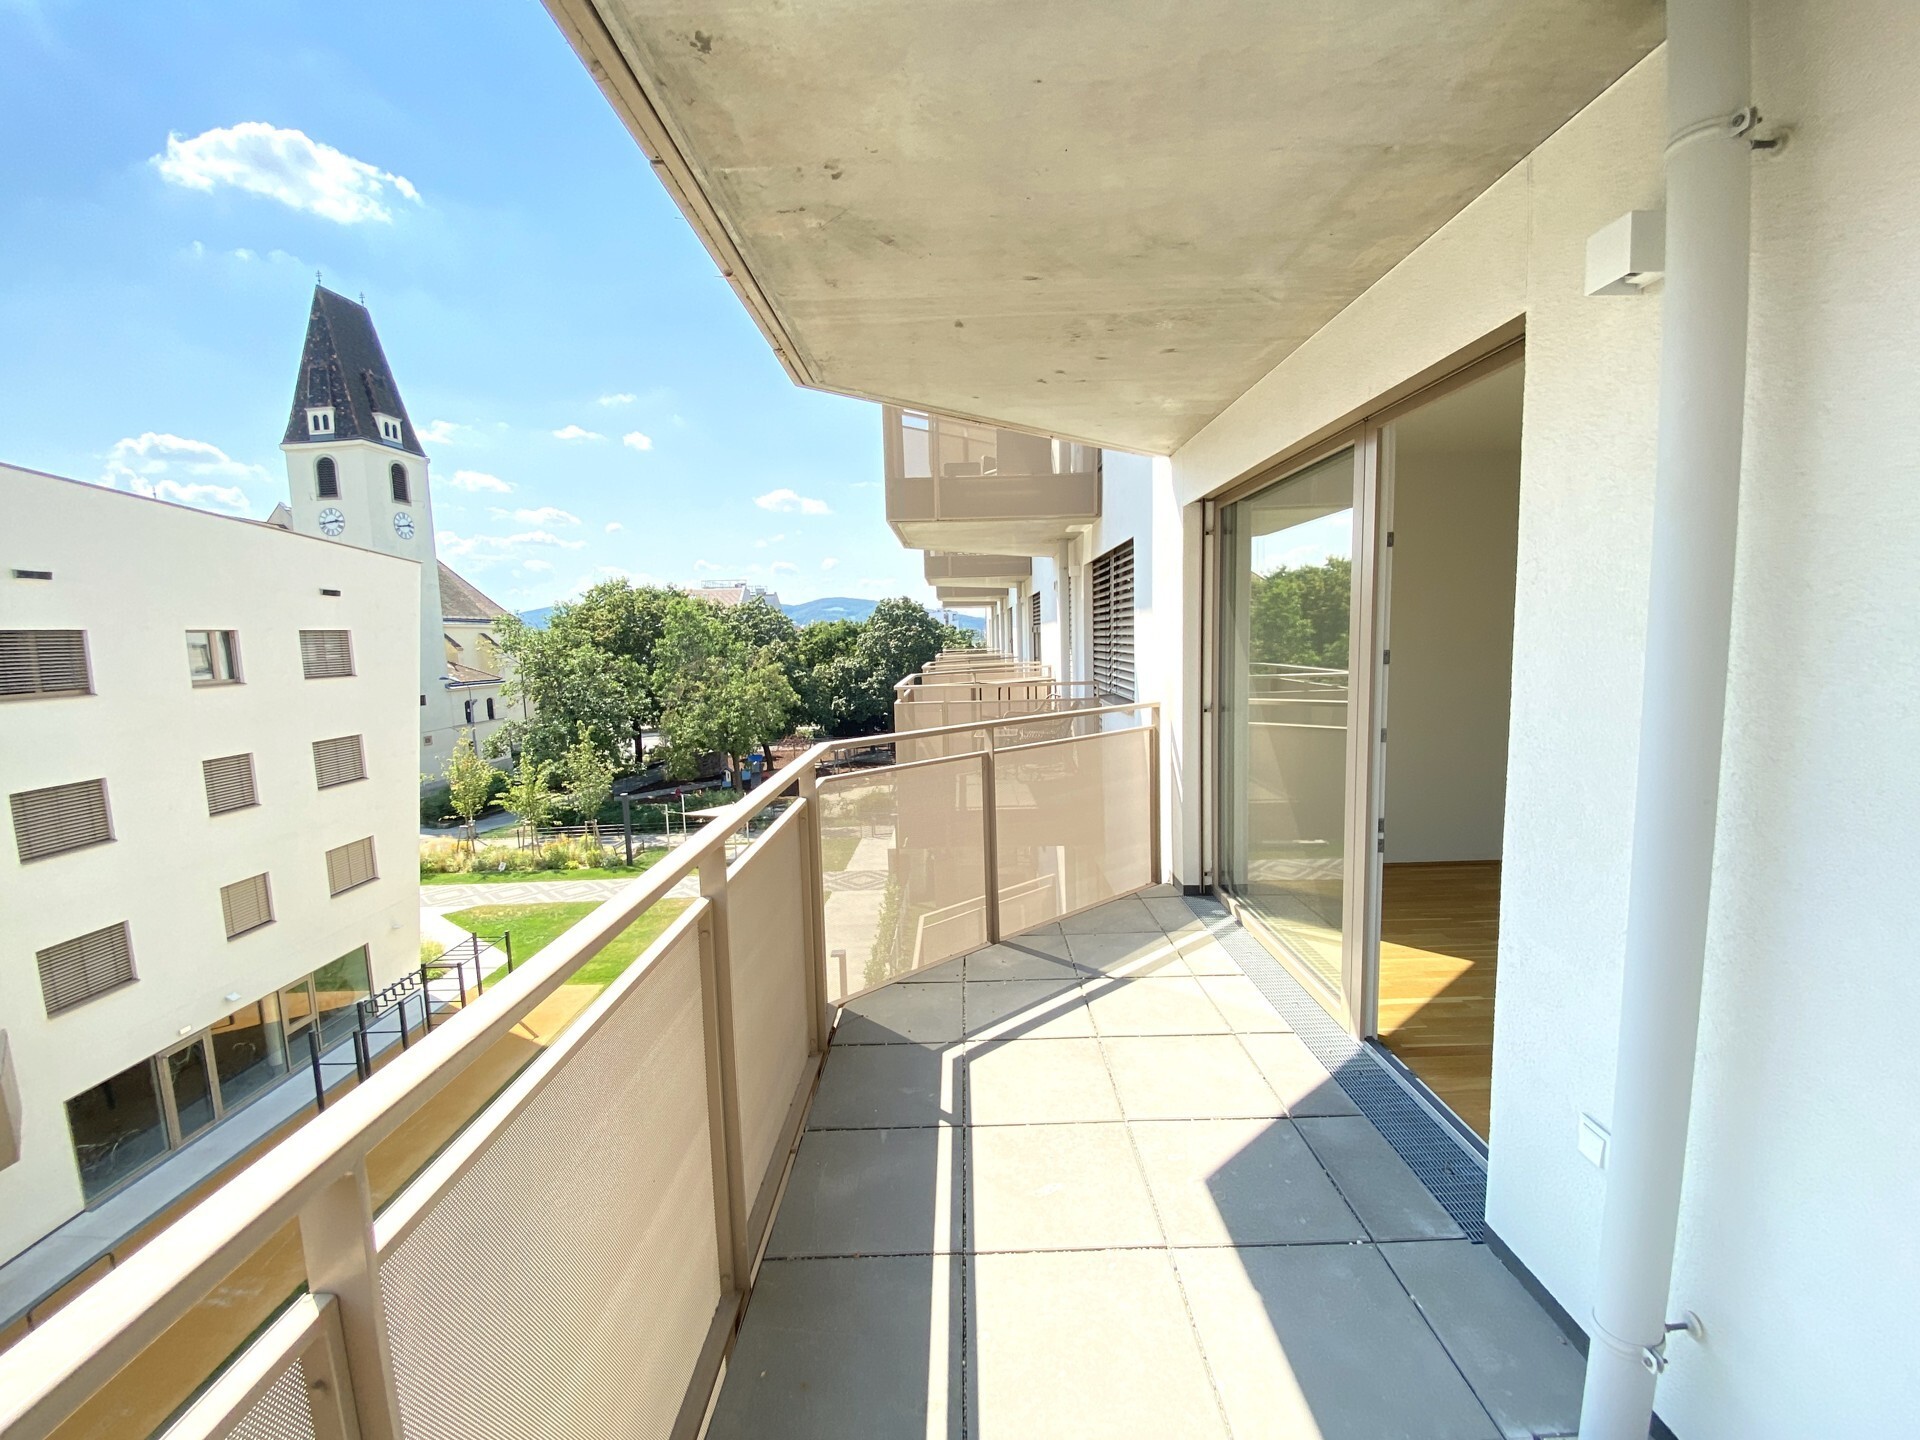 Hochwertige Neubau 3-Zimmer Wohnung mit perfekter Verkehrsanbindung und großer Freifläche - zu kaufen in 1140 Wien